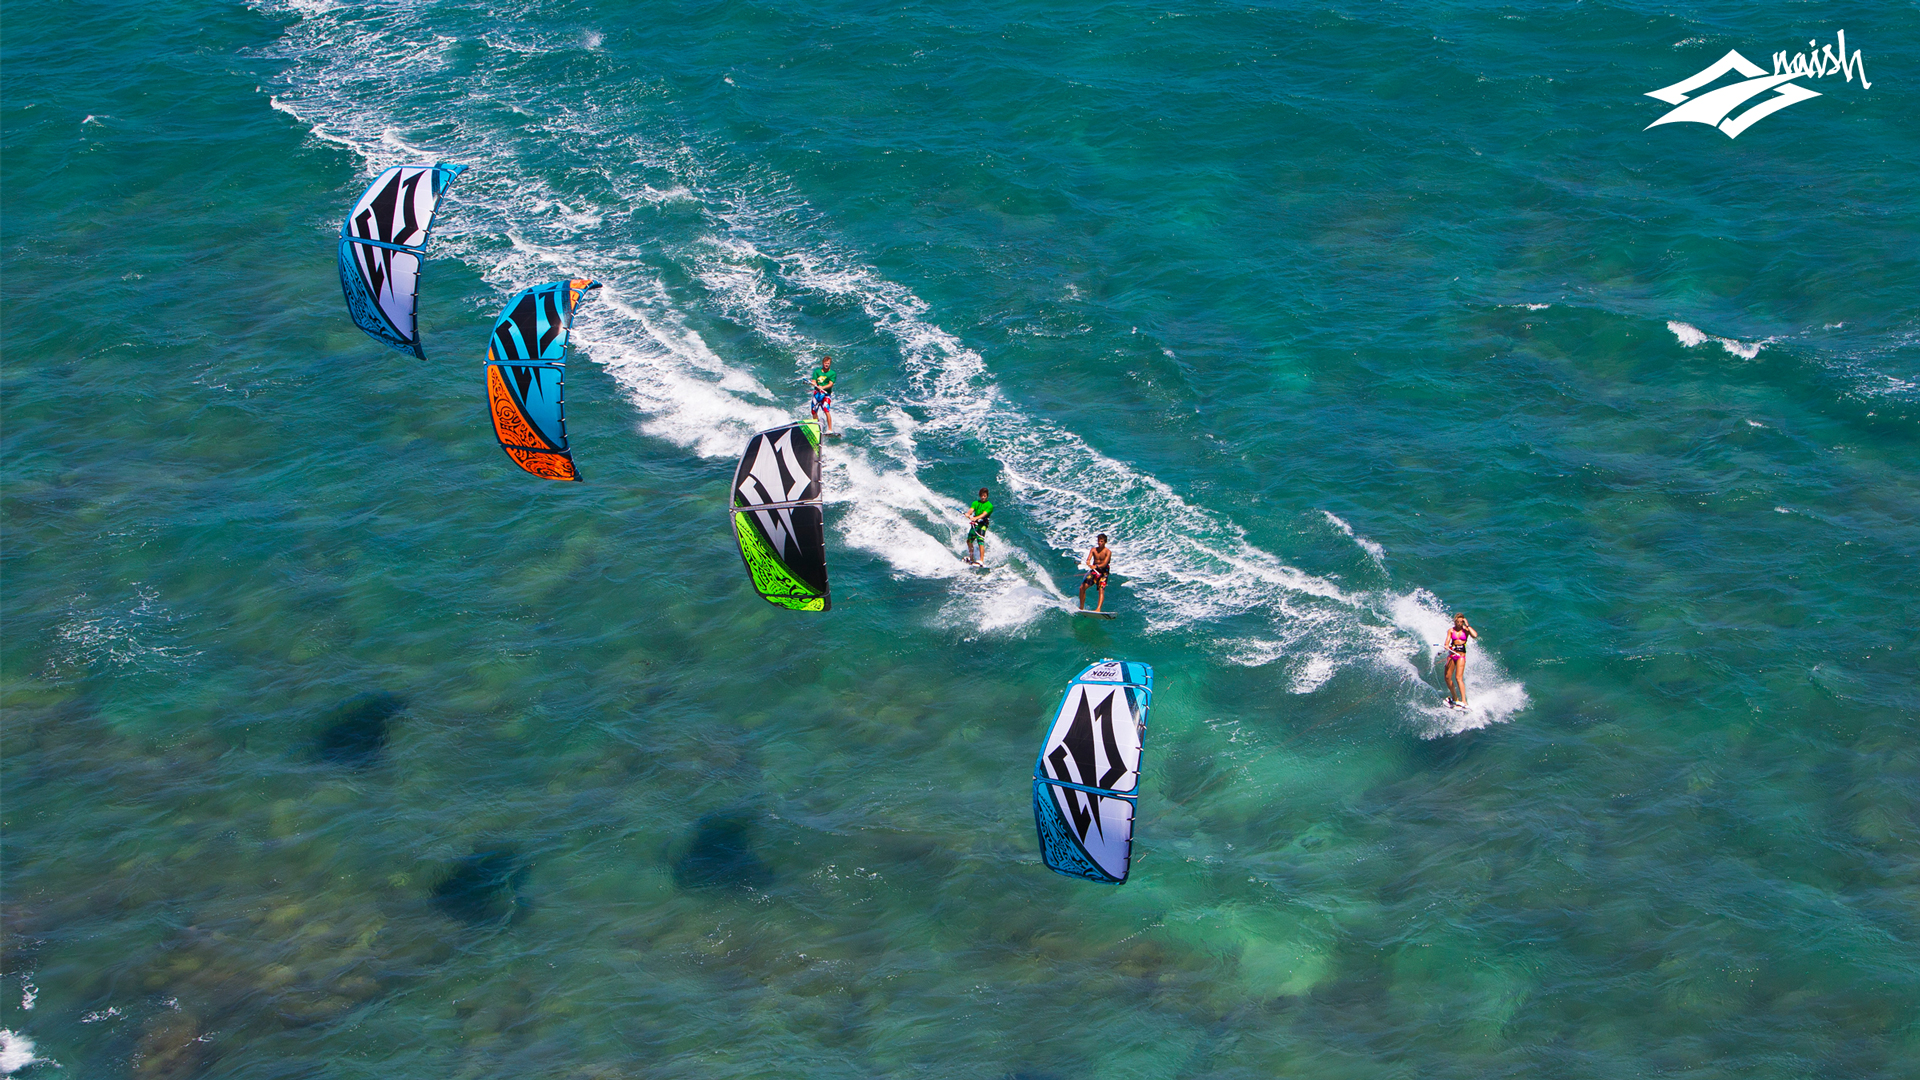 Download Freeride kitesurfing wallpaper: A nice little ...